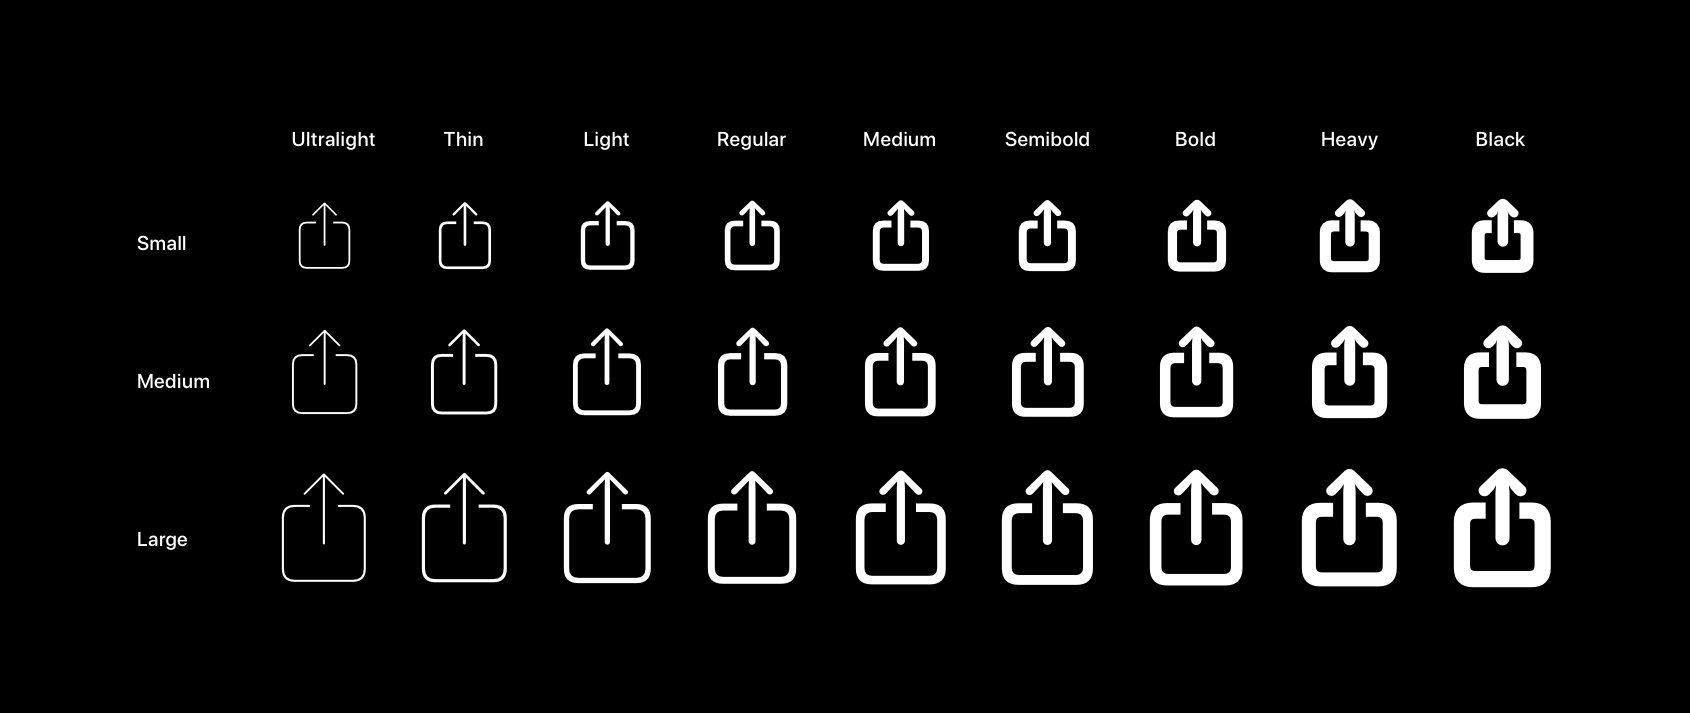 苹果专用图标资源库 SF Symbols 简单使用